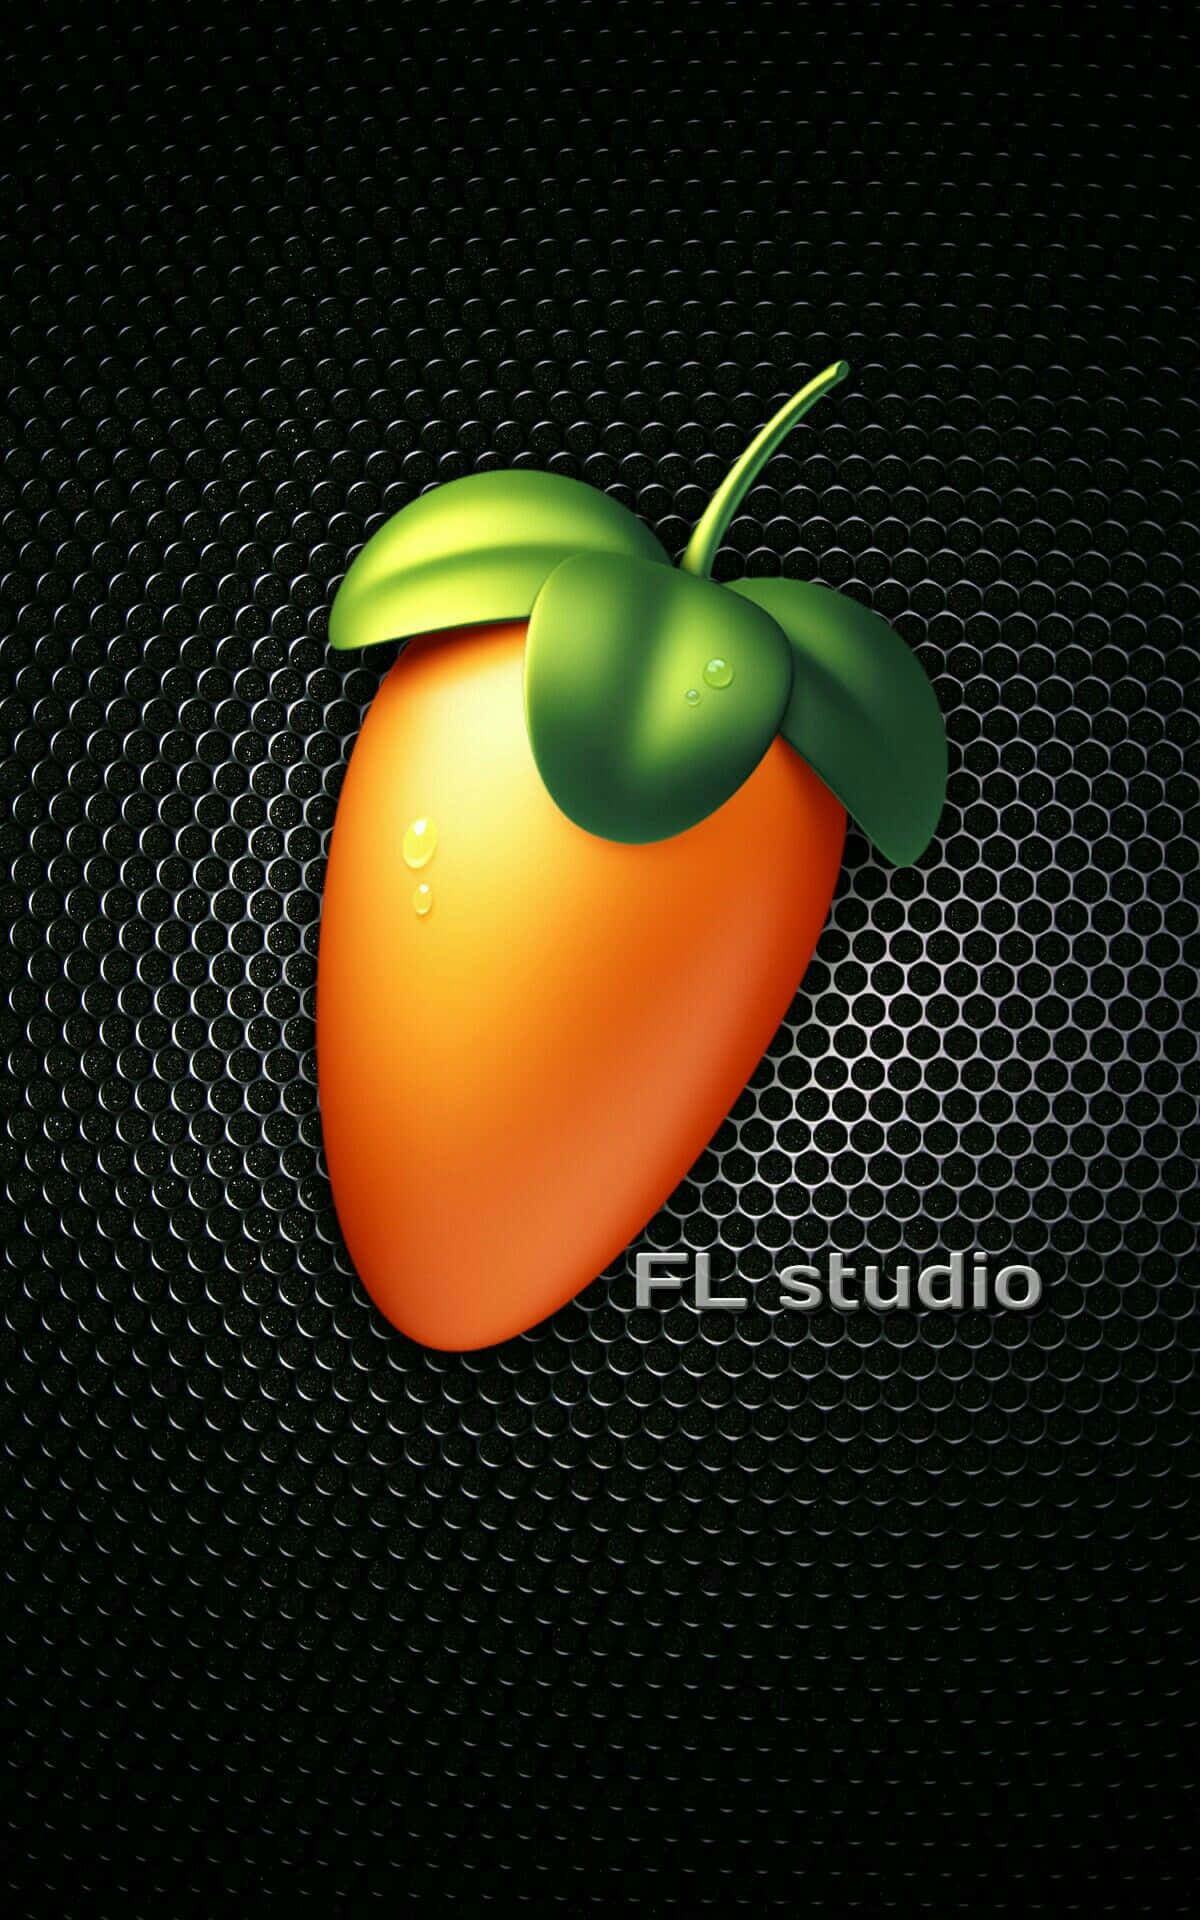 Logotipodo Fl Studio Em Um Fundo Preto. Papel de Parede